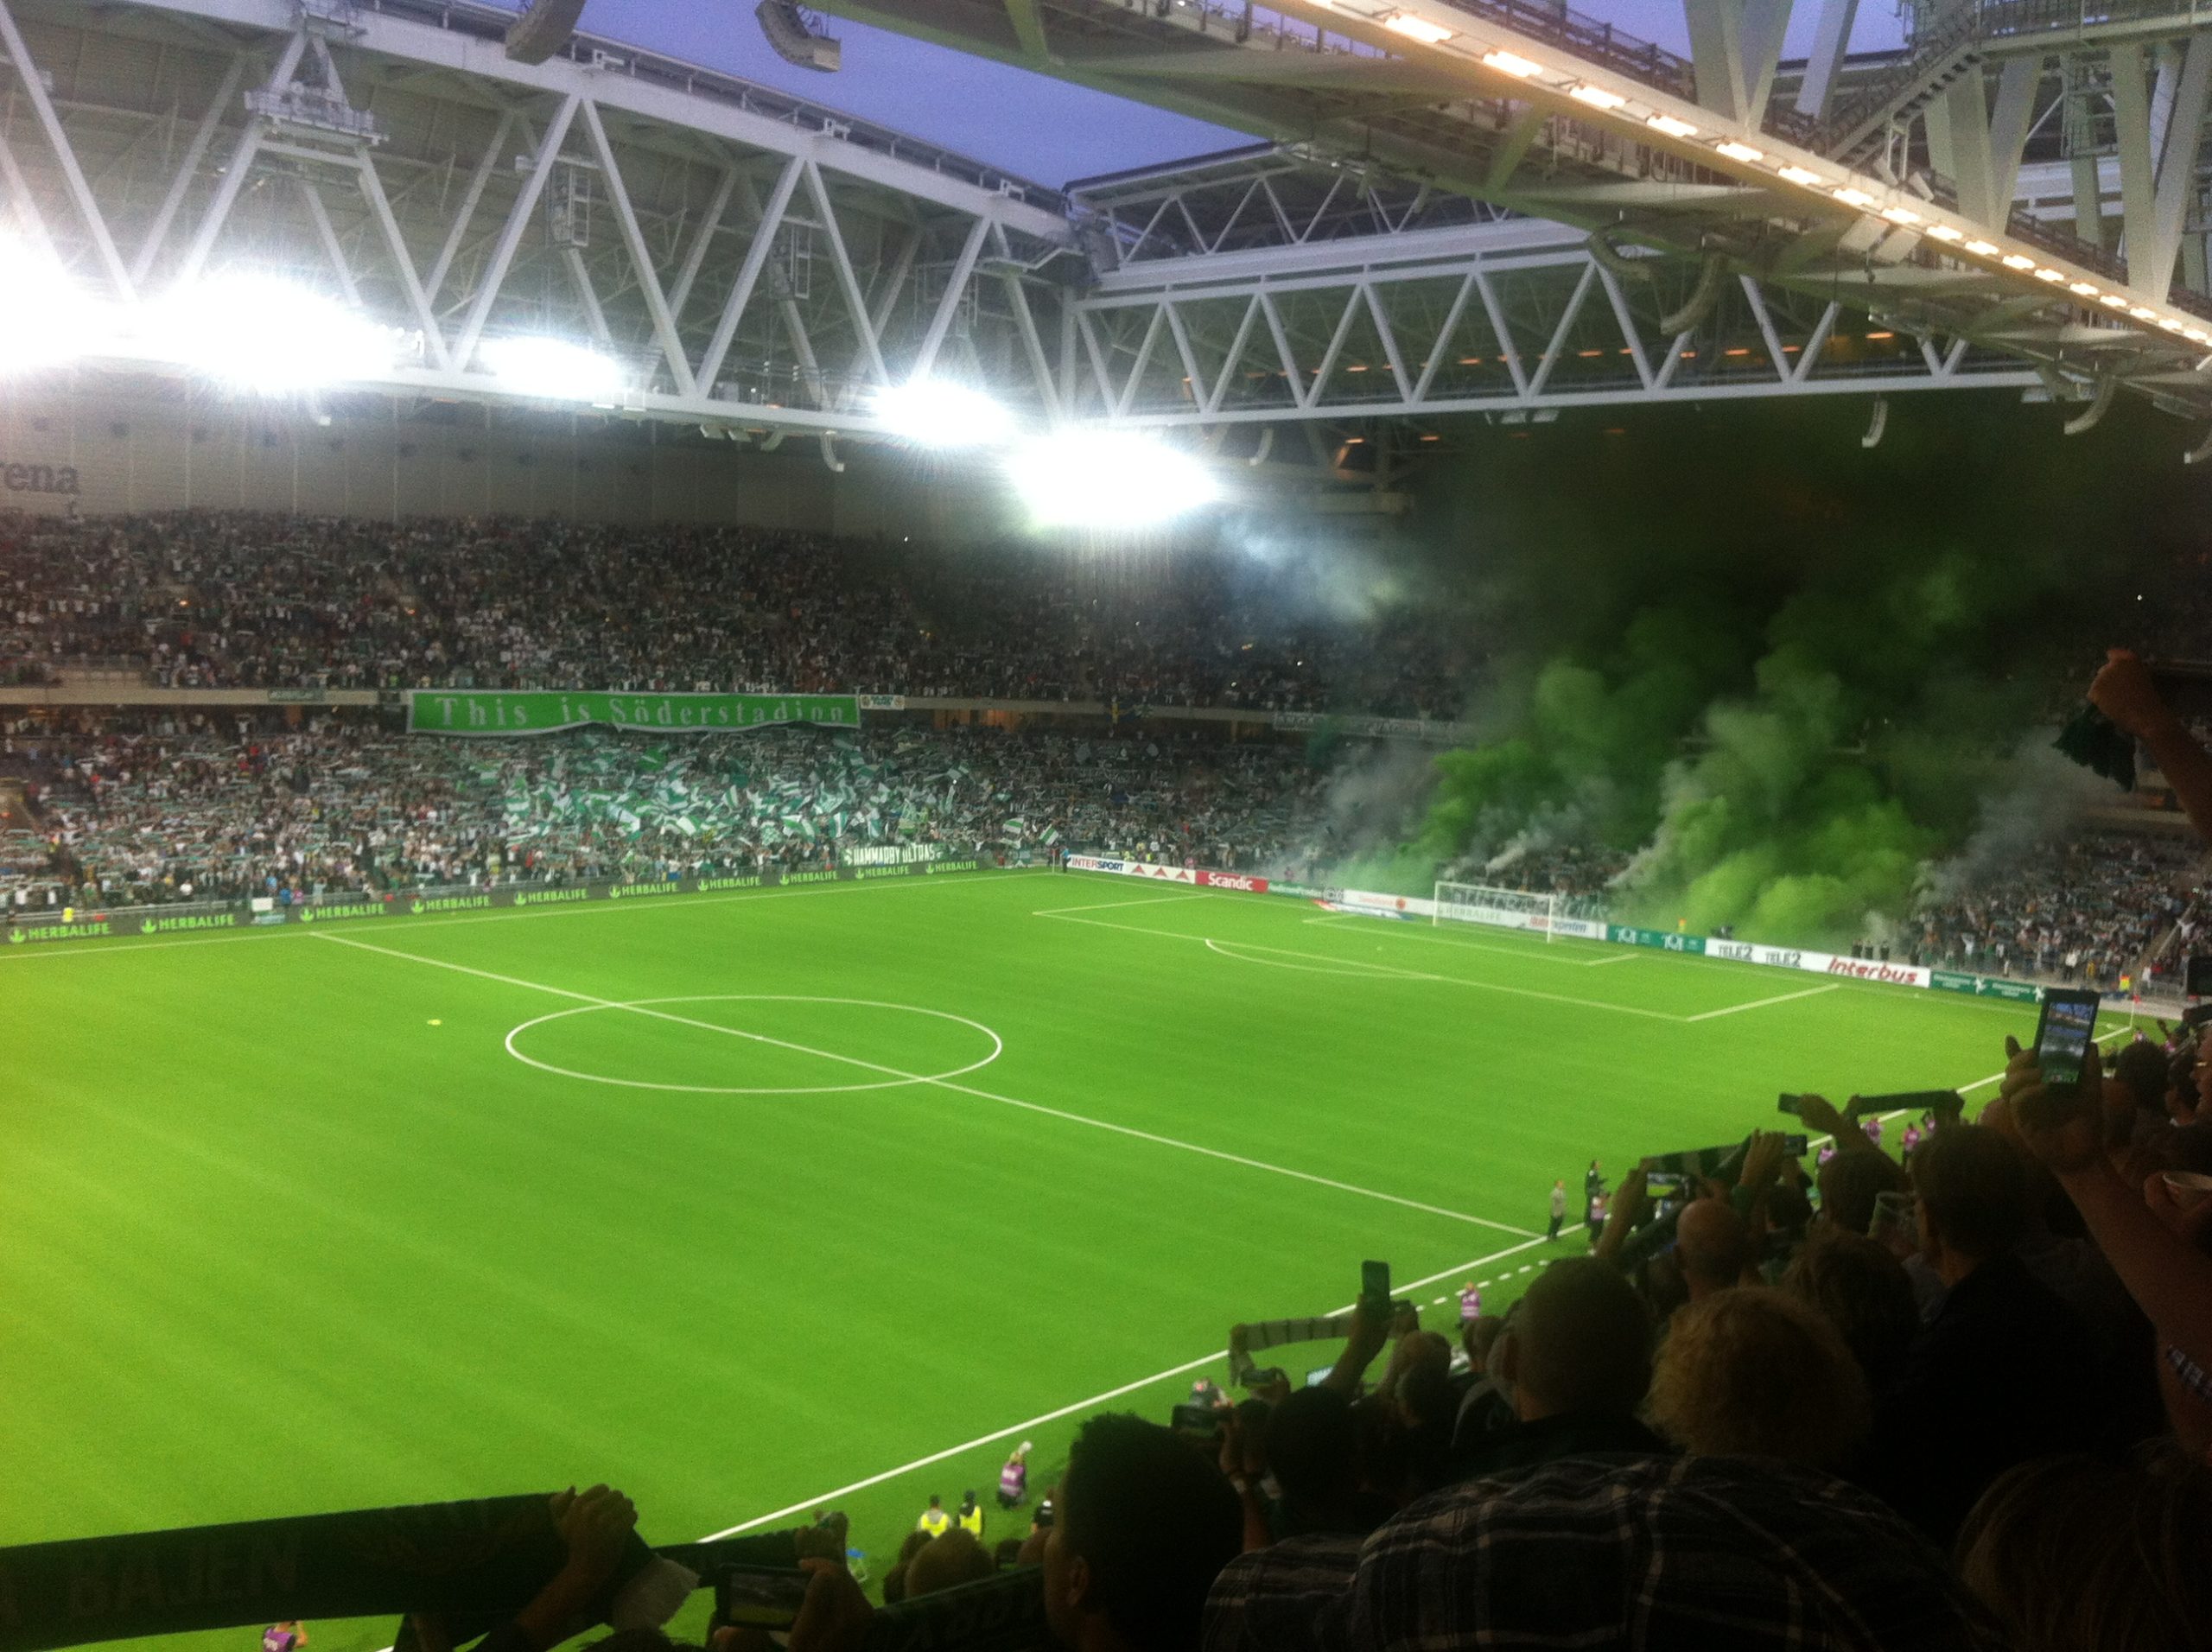 Liga fodbold i Sverige i juni